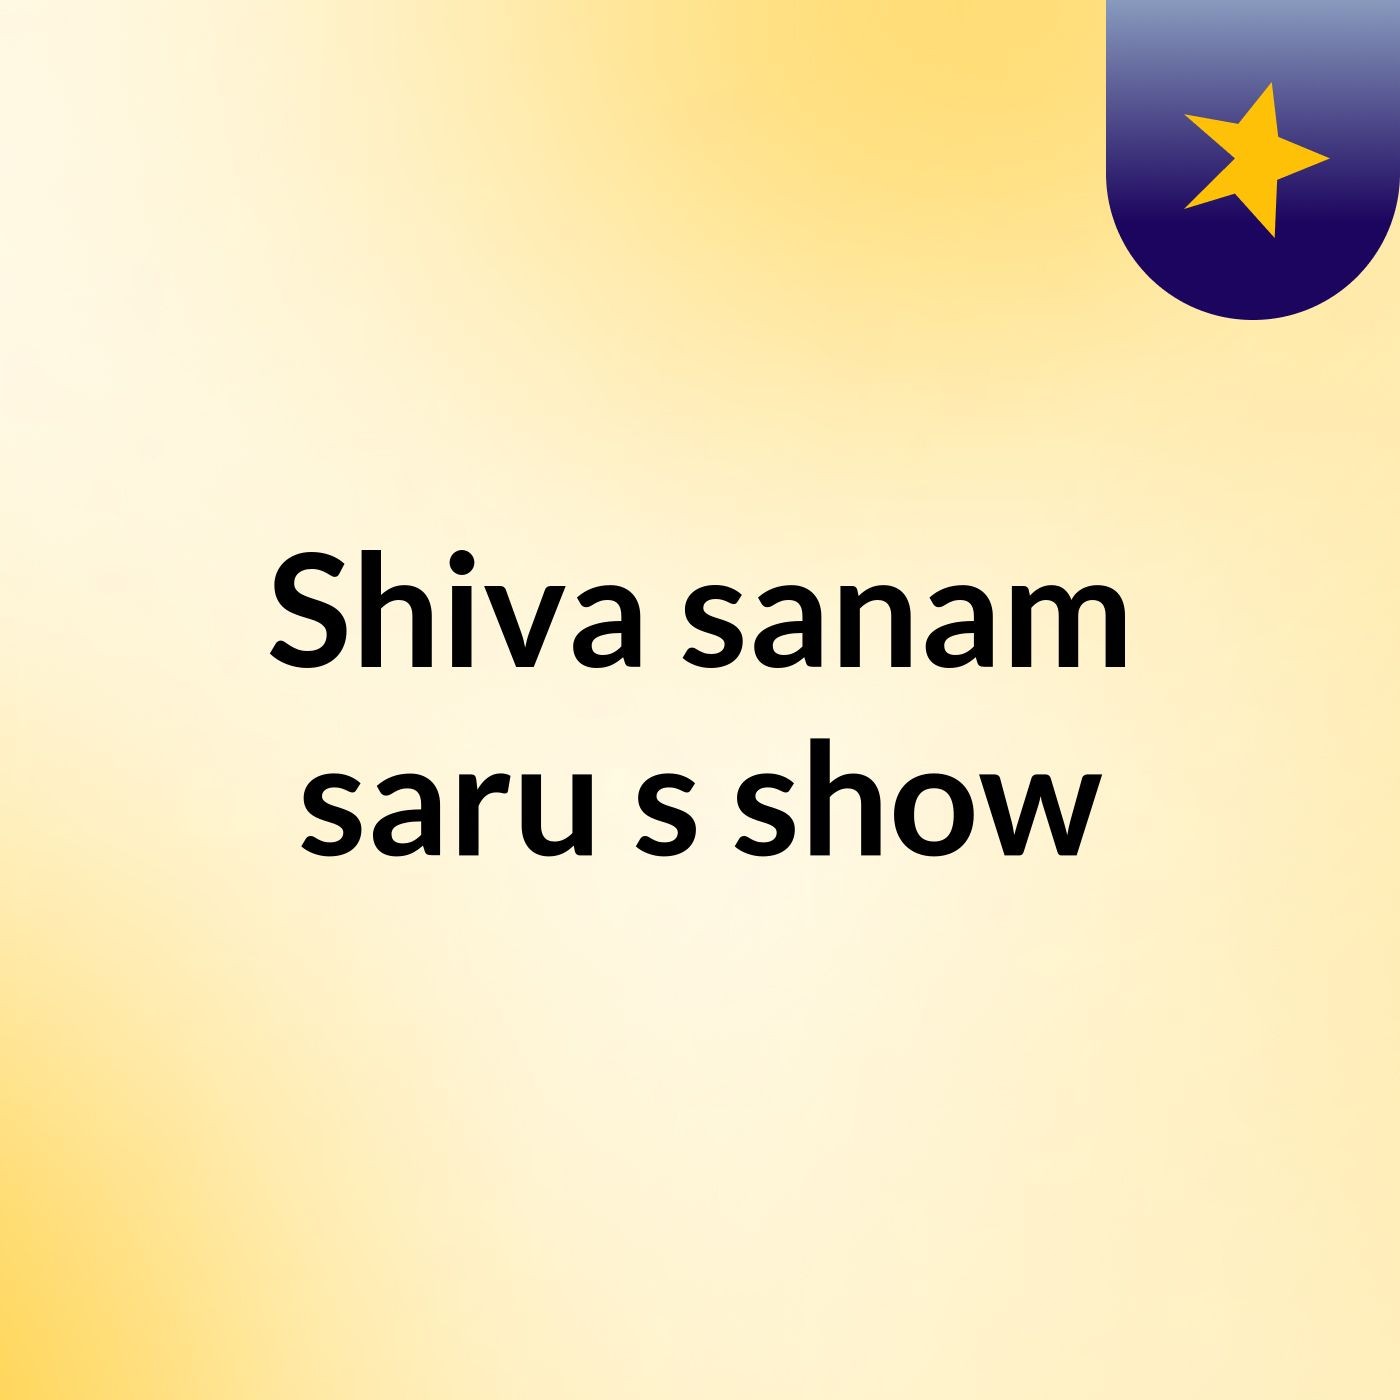 Shiva sanam saru's show